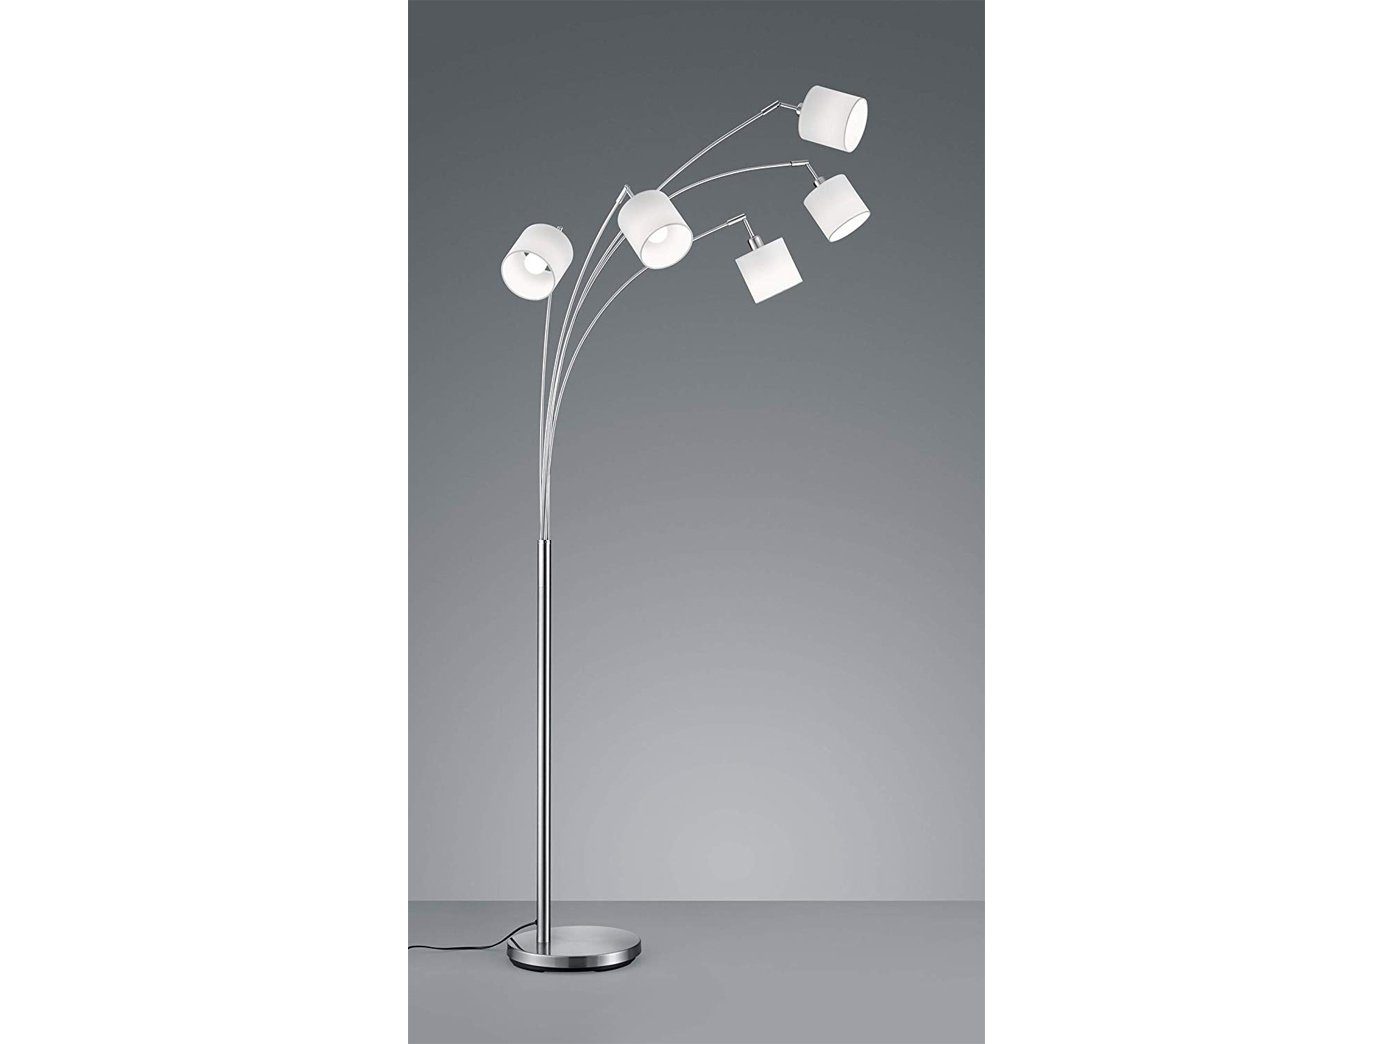 Designer-lampen Große Lampenschirme Stehlampe, LED ausgefallene LED H Dimmfunktion, Stoff meineWunschleuchte 200cm Warmweiß, Silber-Weiß wechselbar, dimmbar